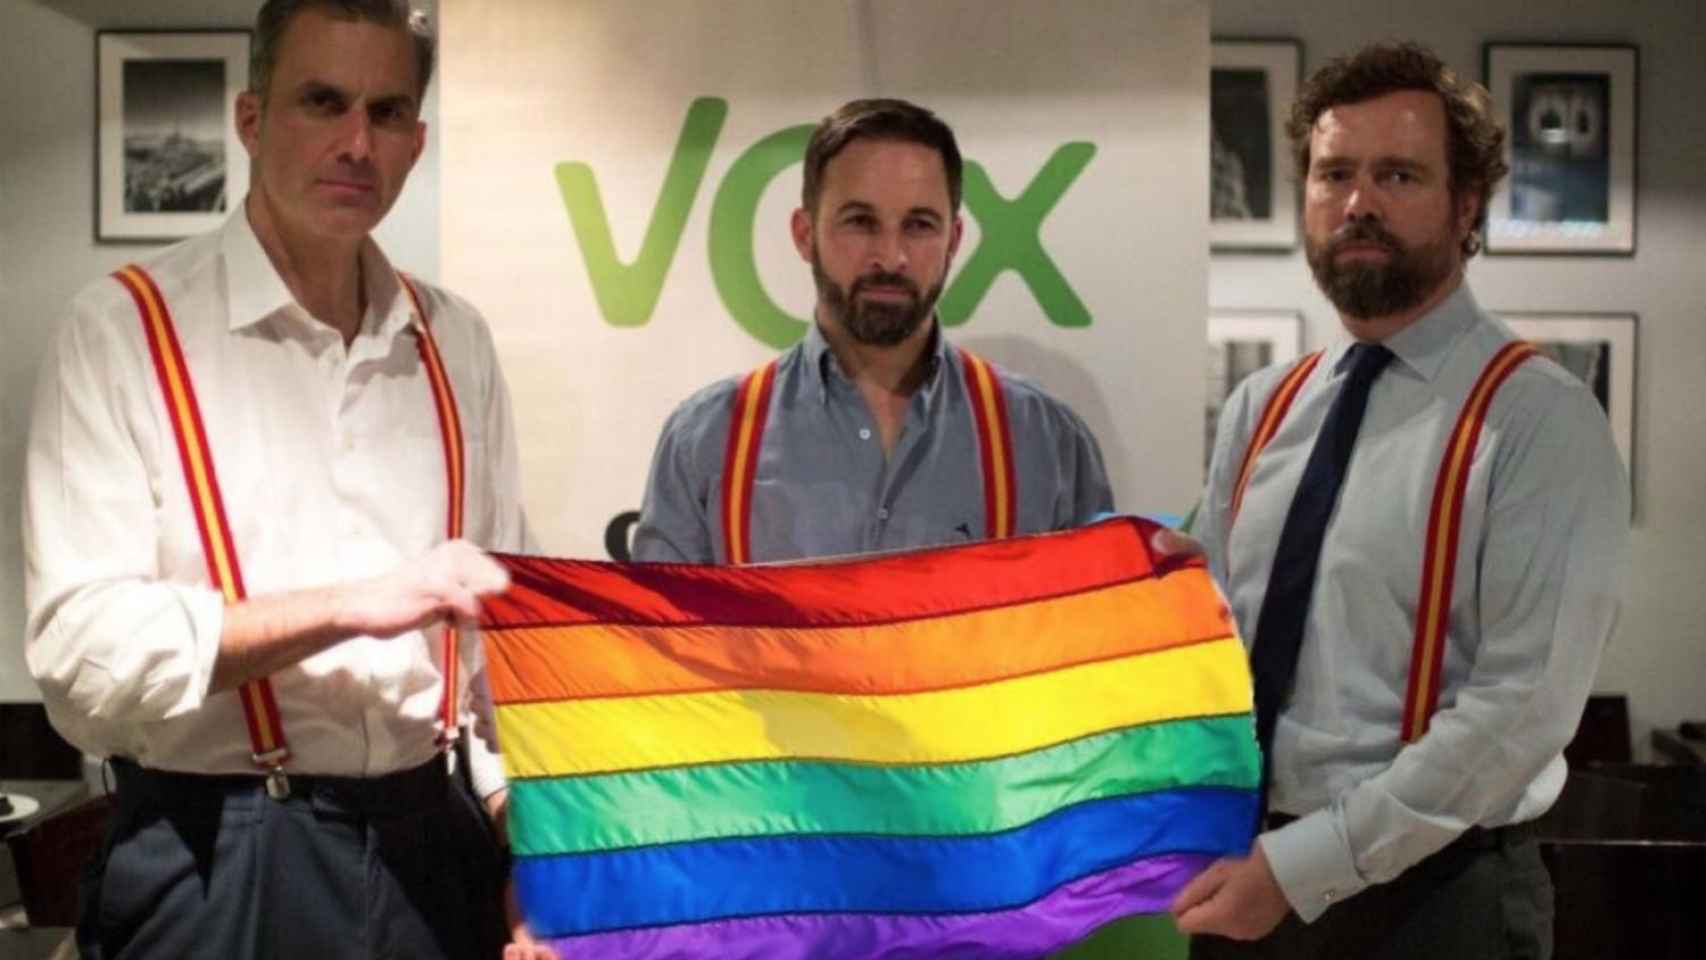 Santiago Abascal y otros representantes de Vox sujetando la bandera LGBTI / SHANGAY